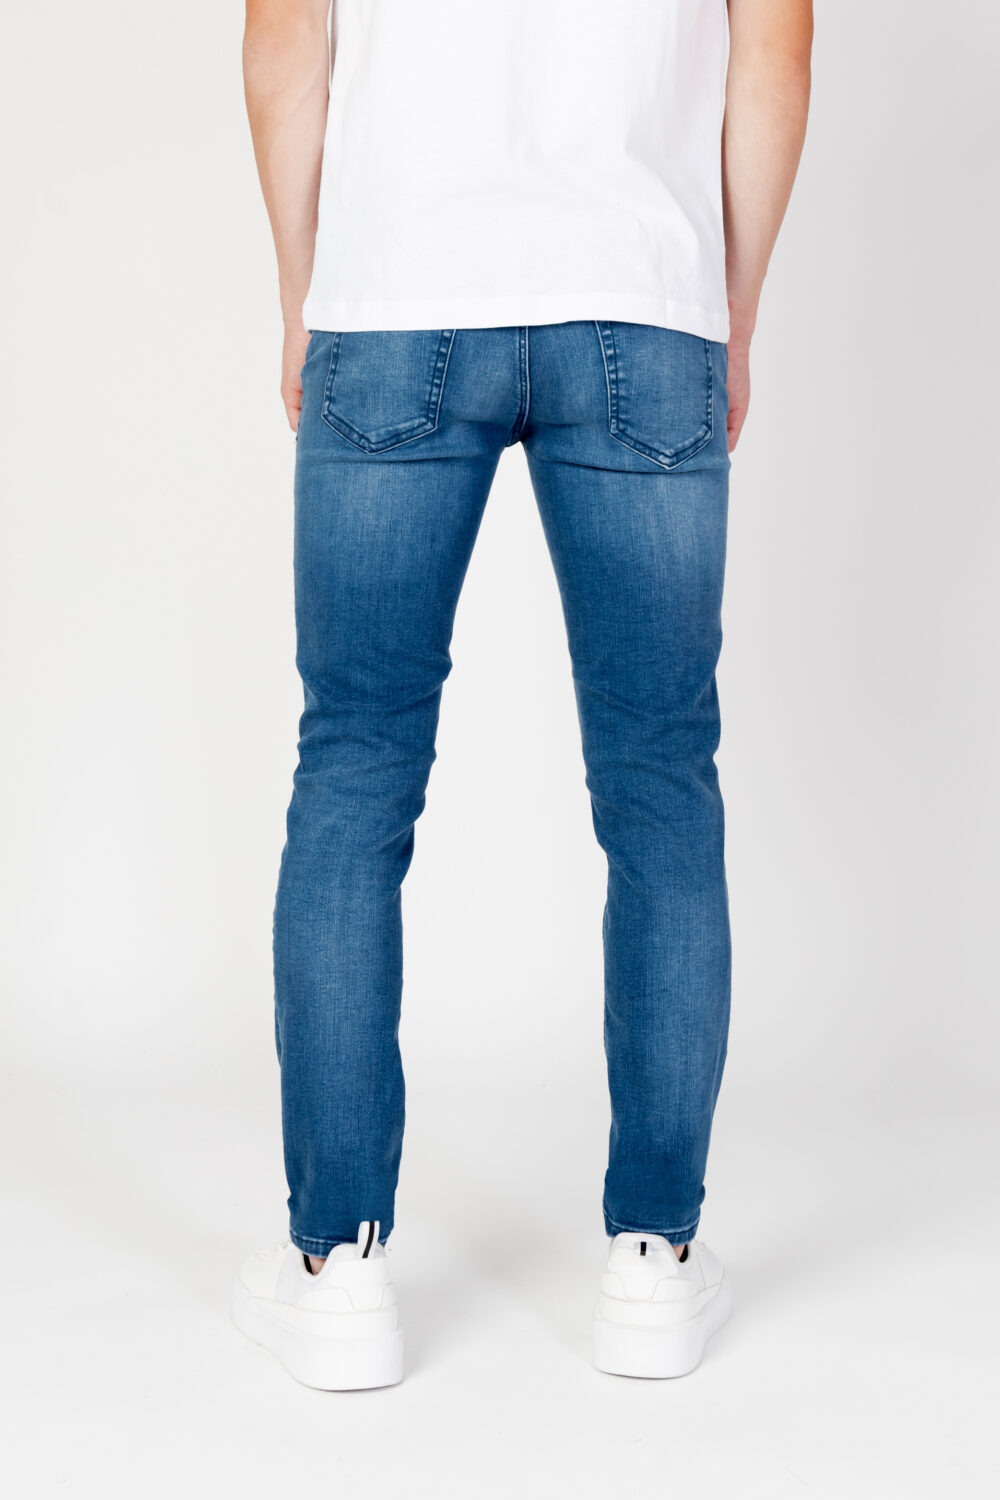 Jeans skinny Antony Morato mason skinny fit in power Denim - Foto 3